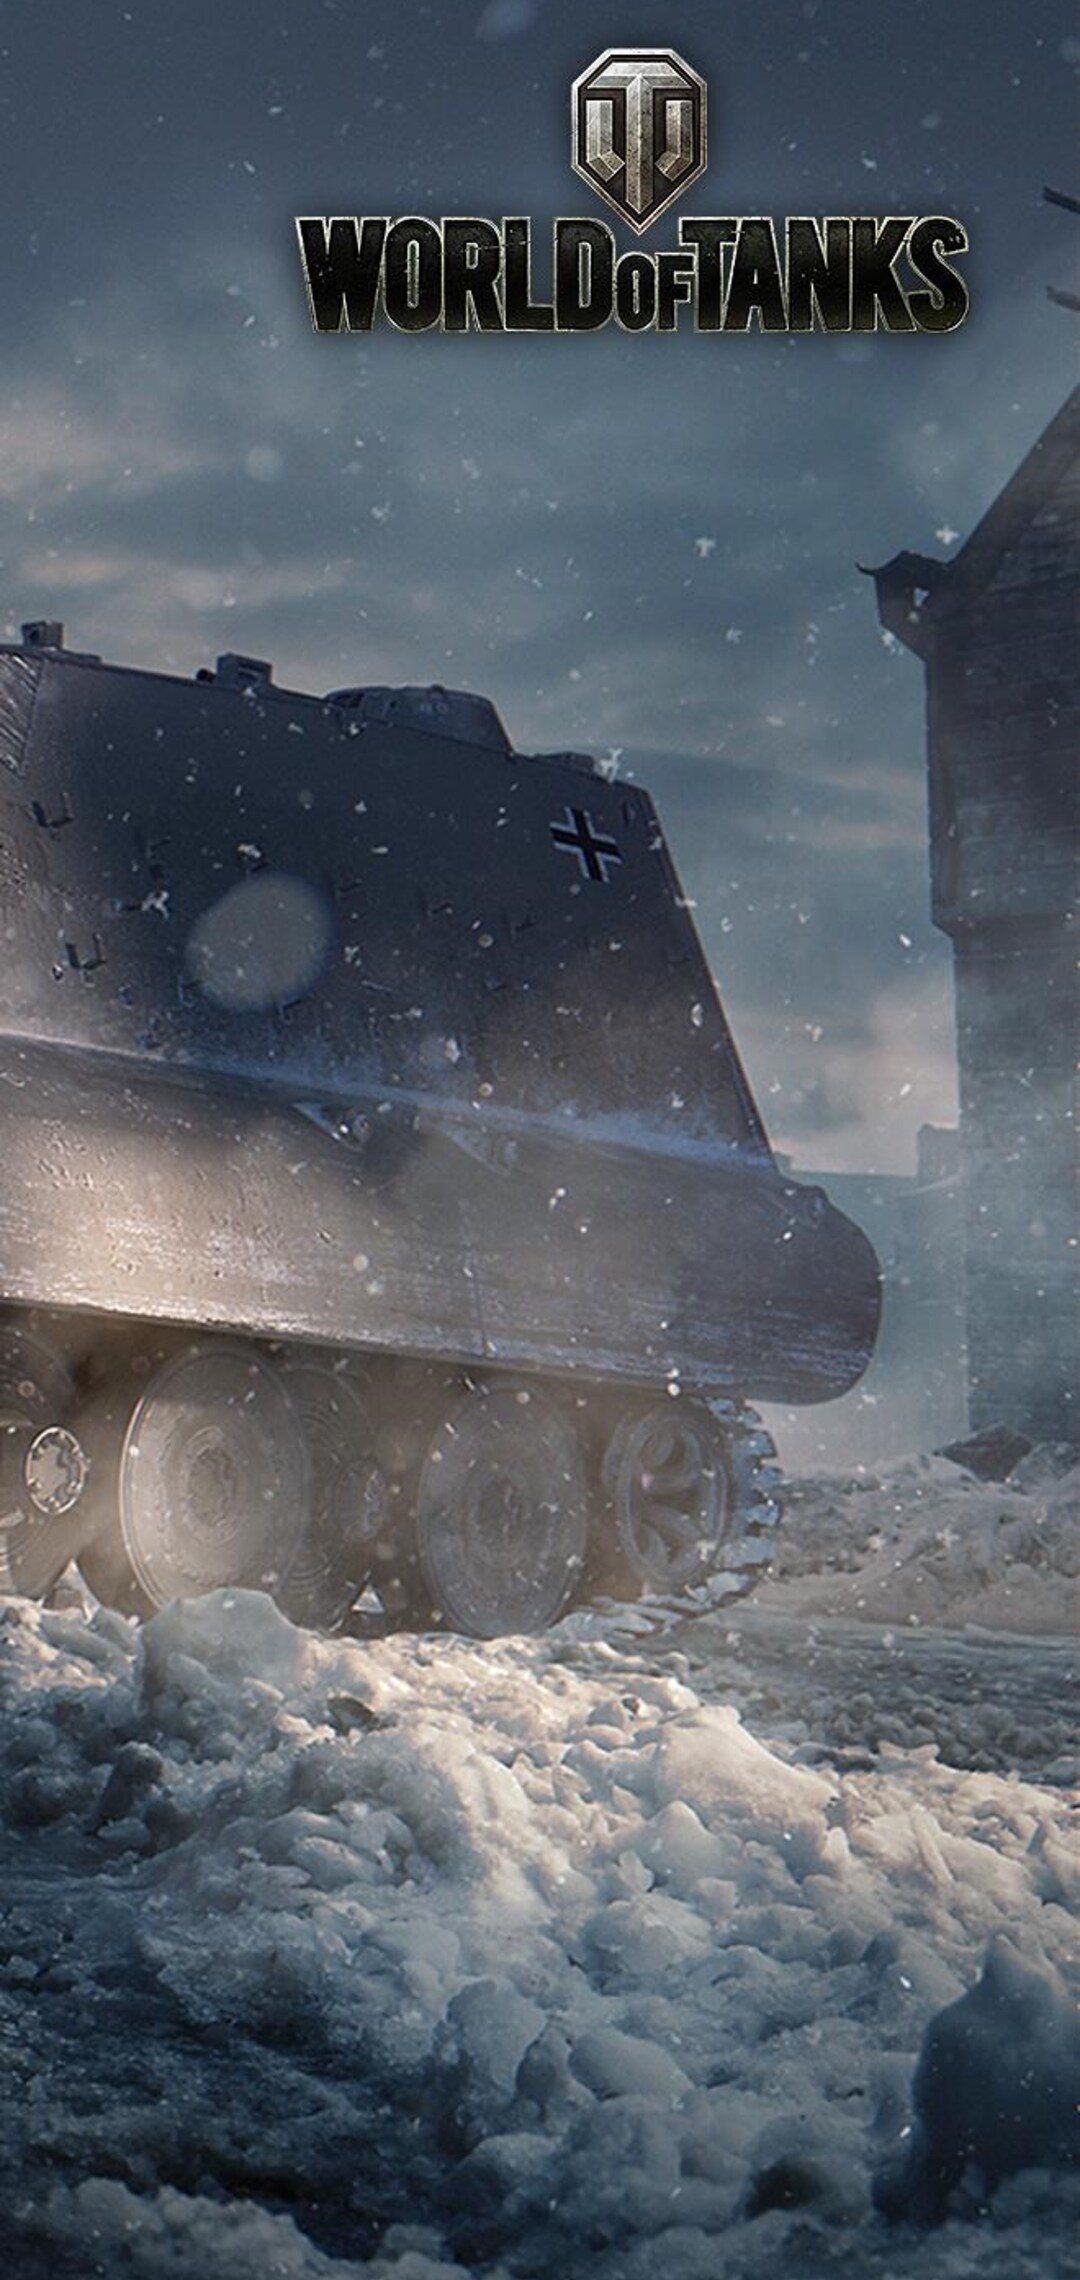 world-of-tanks-game-poster.jpg